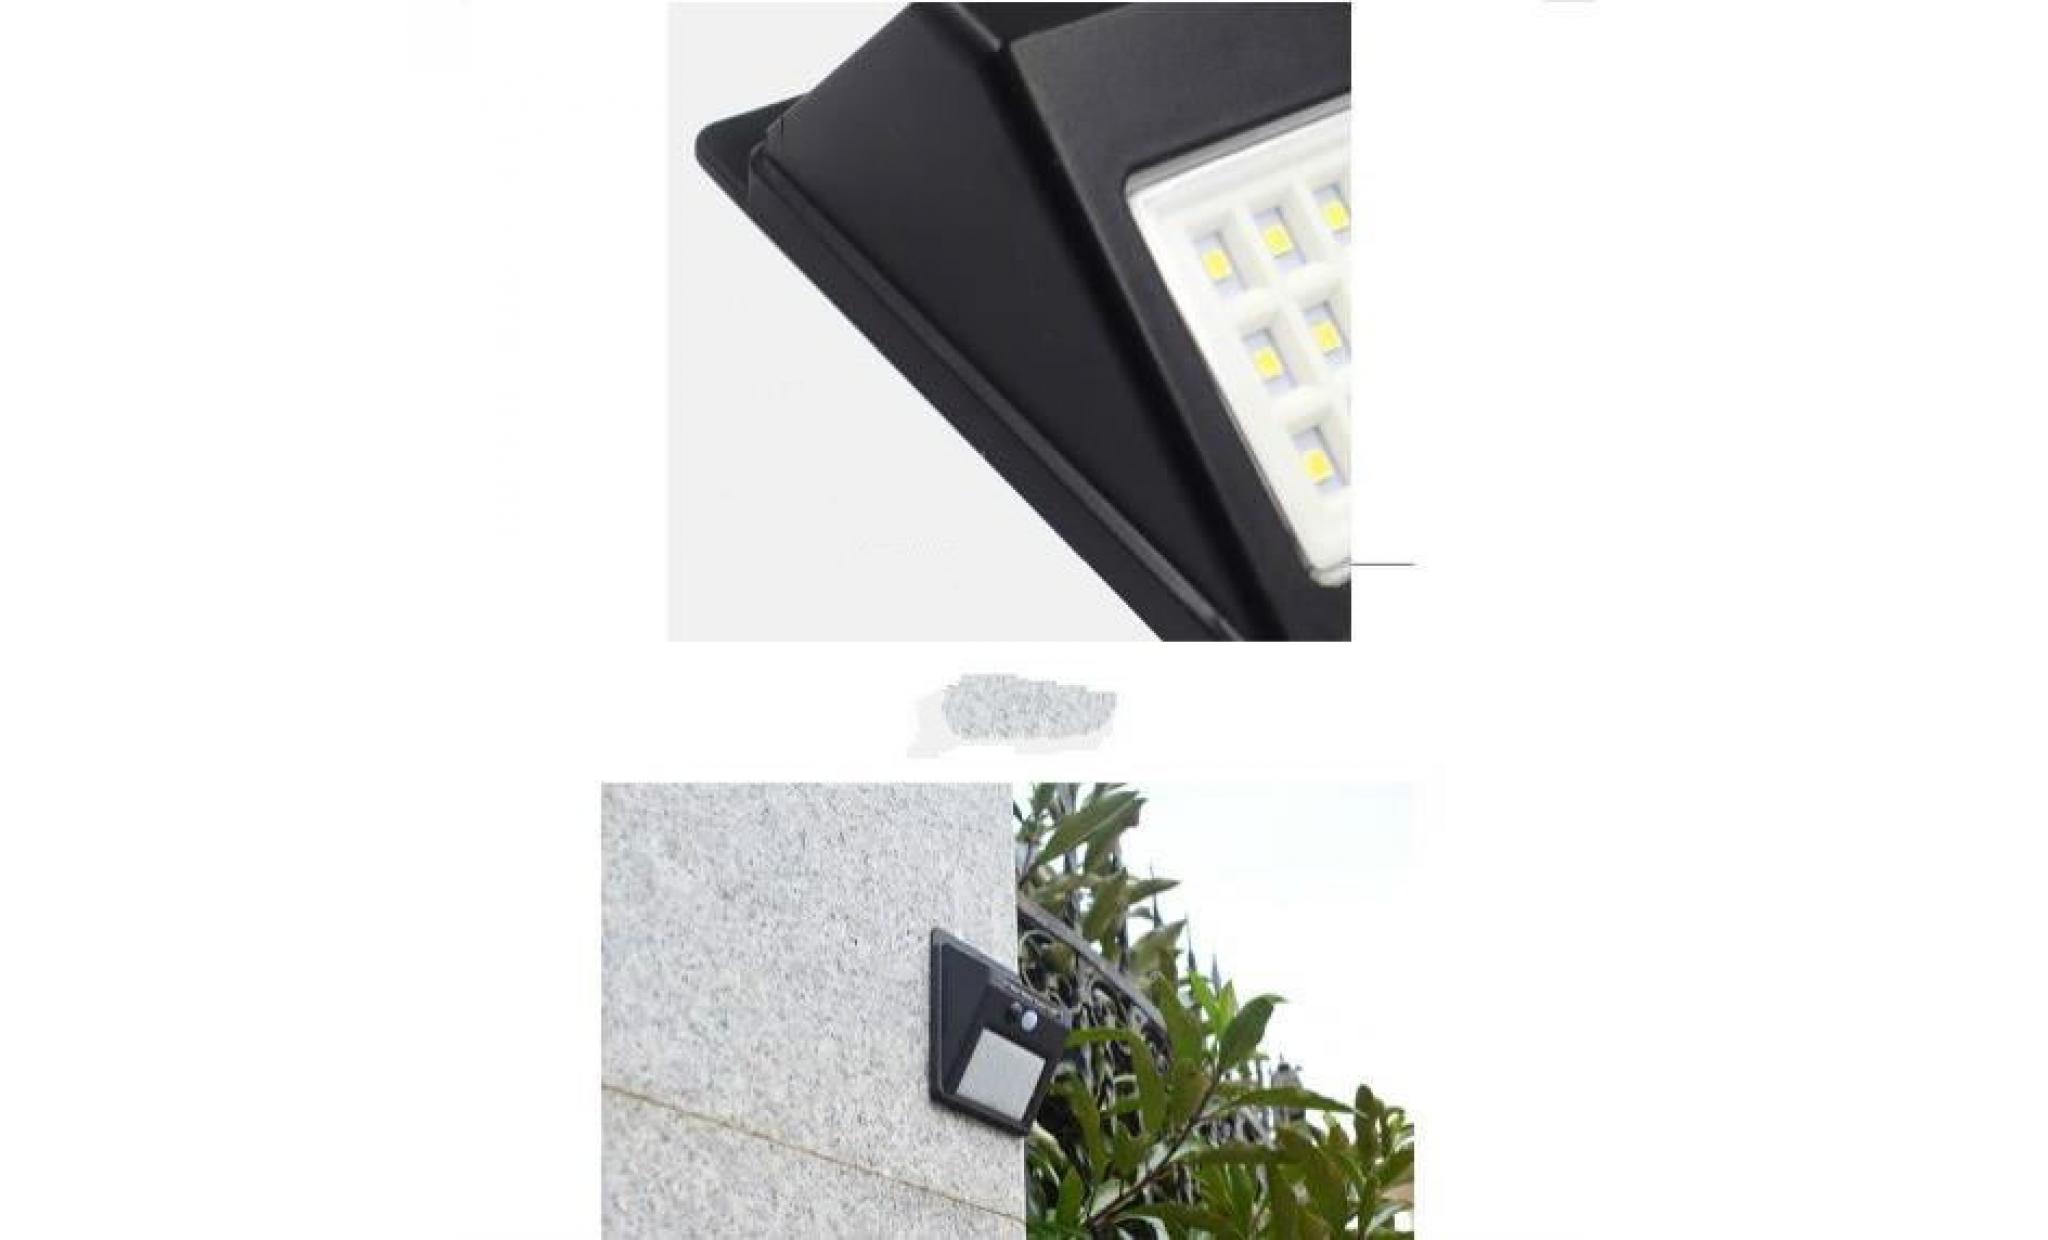 30led lumières solaires lampe murale intérieure / extérieure (noir)beau et durable ip65 étanche pas cher